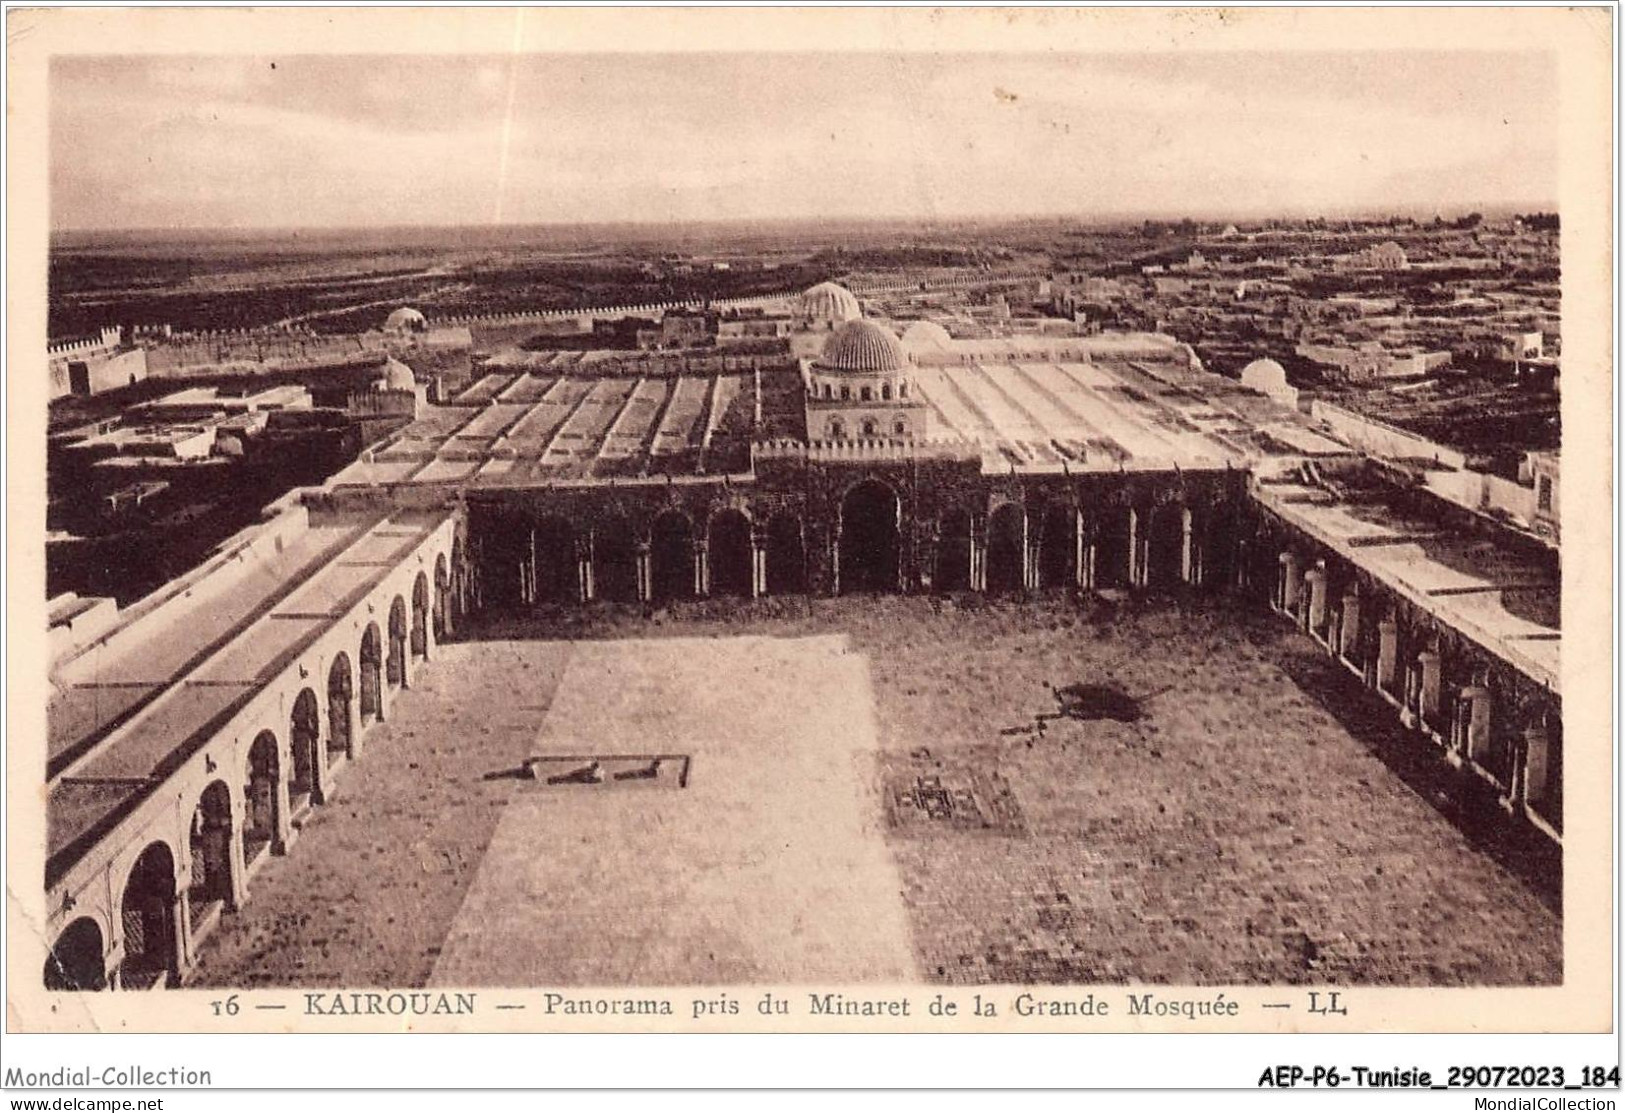 AEPP6-TUNISIE-0560 - KAIROUAN - PANORAMA PRIS DU MINARET DE LA GRANDE MOSQUEE - Tunisia